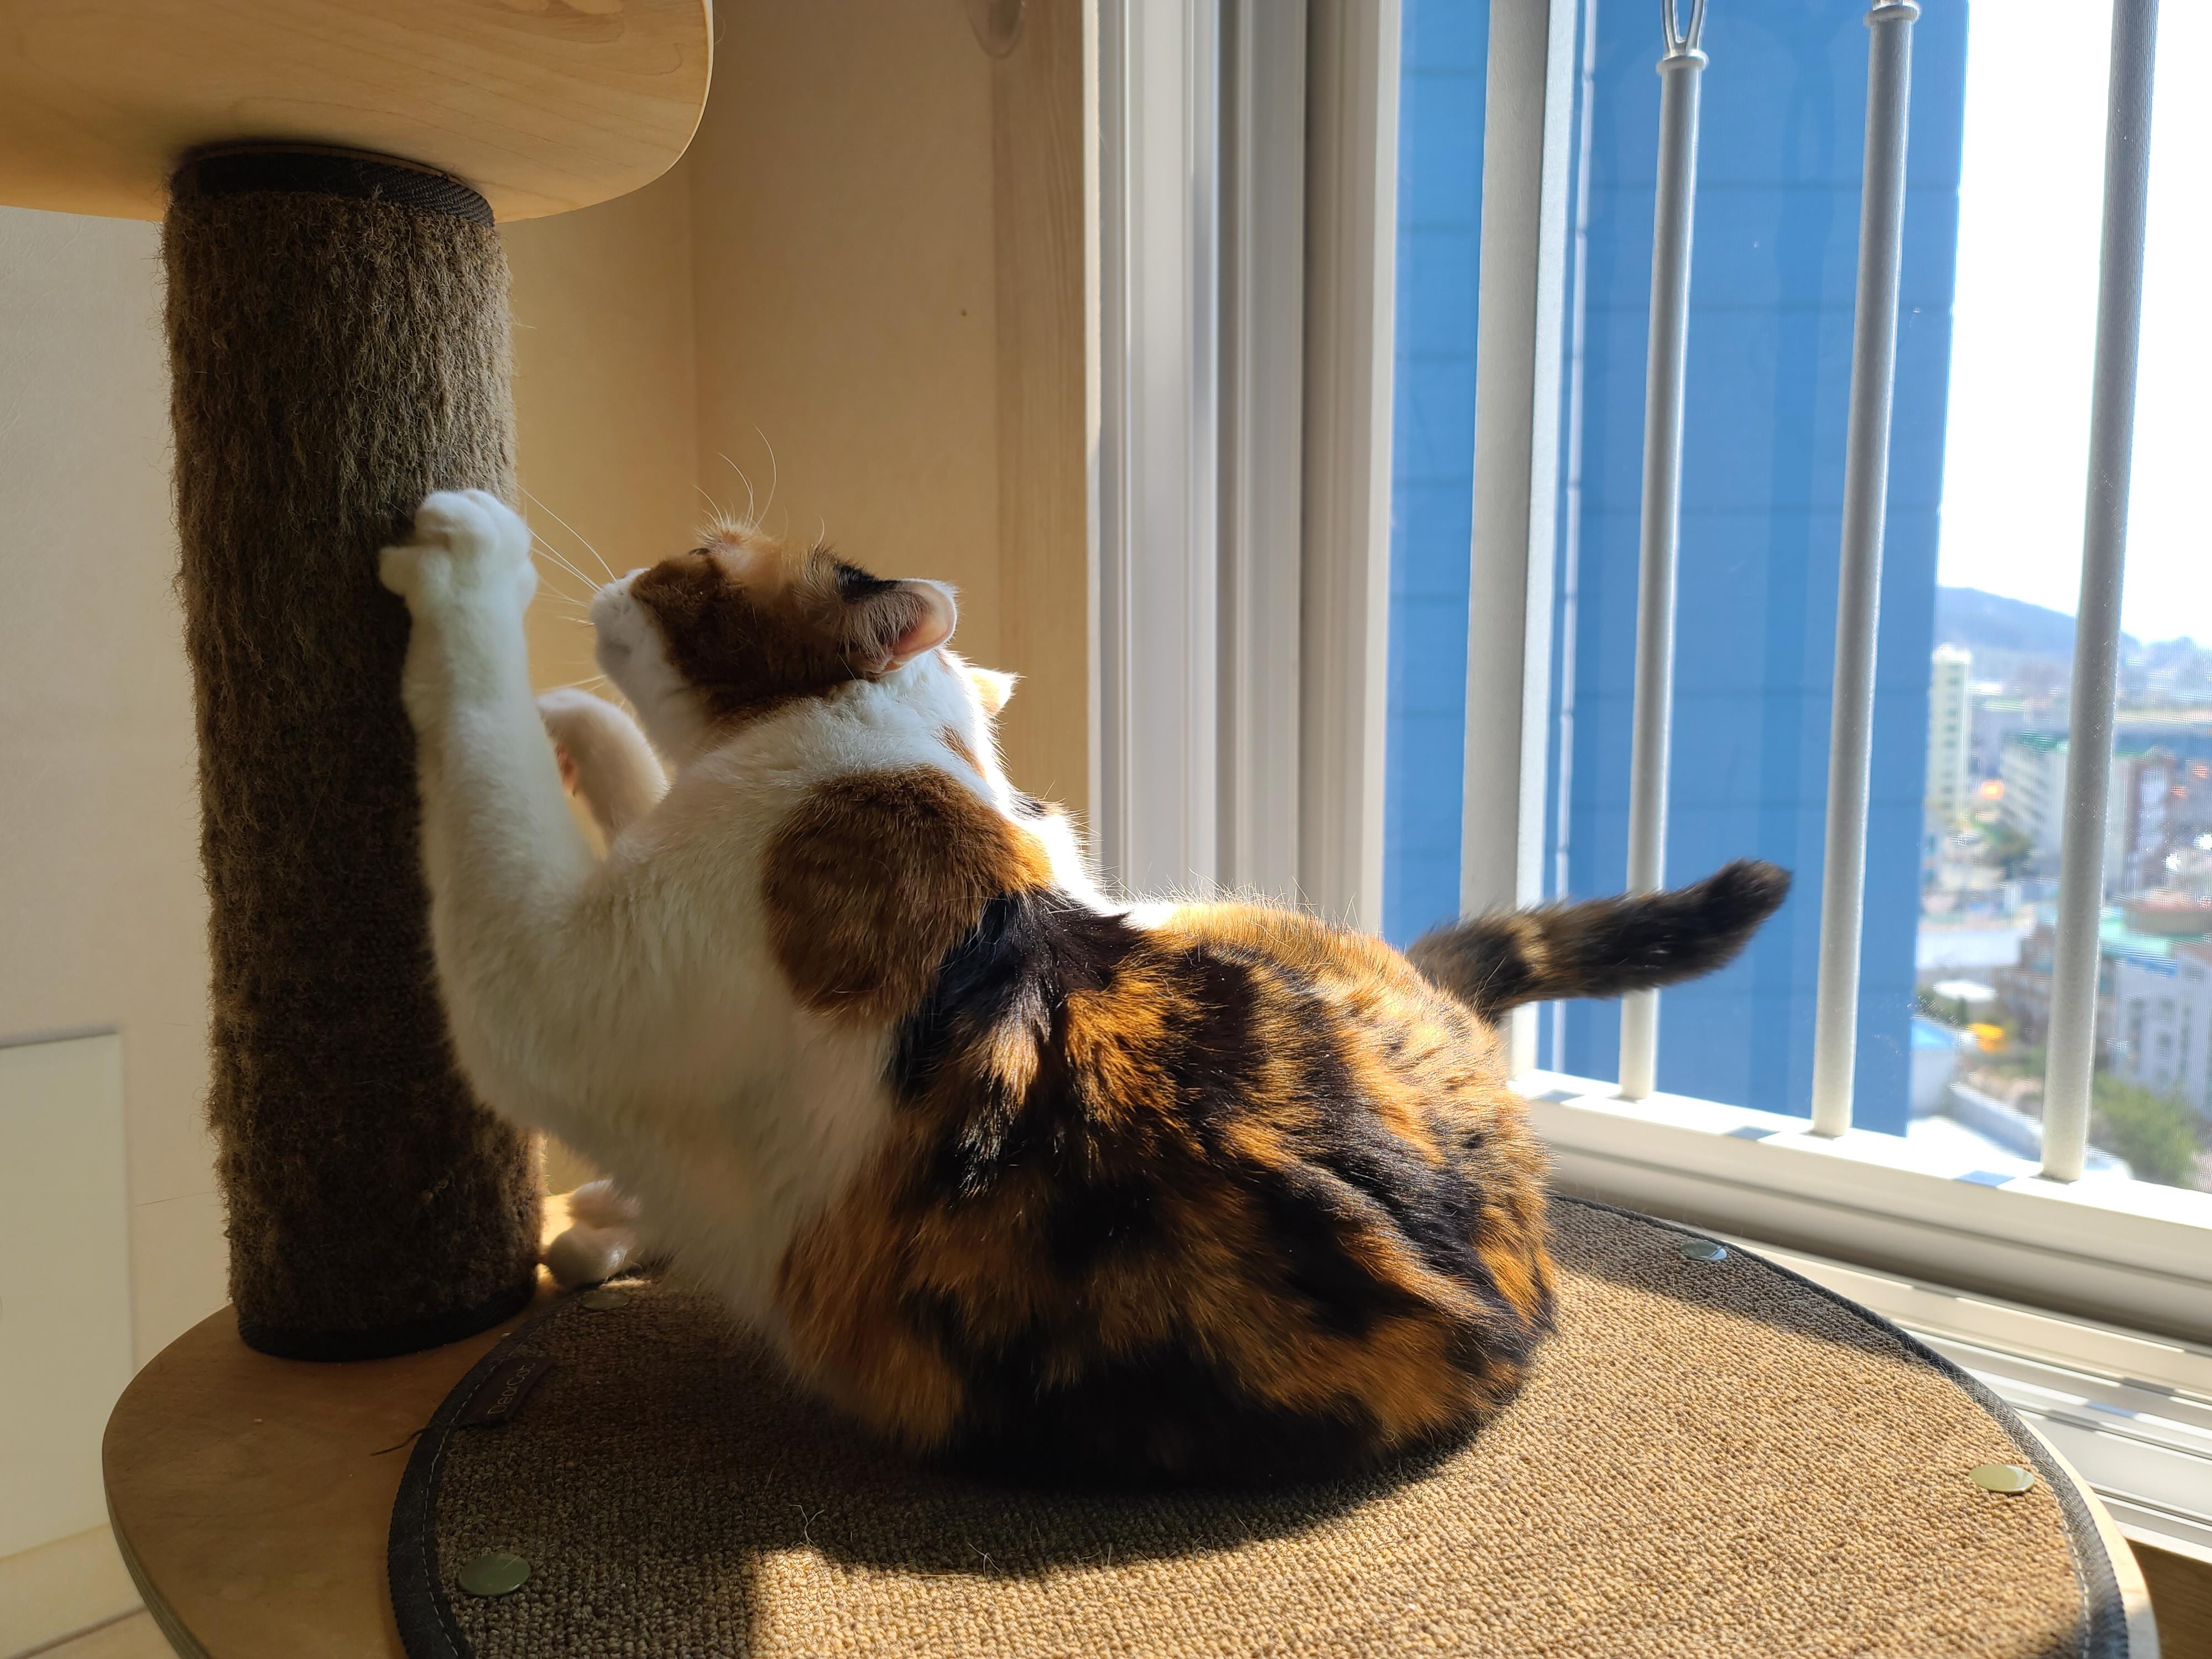 햇빛 쬐면 아기맹수로 변신하는 삼색이 고양이 요미.